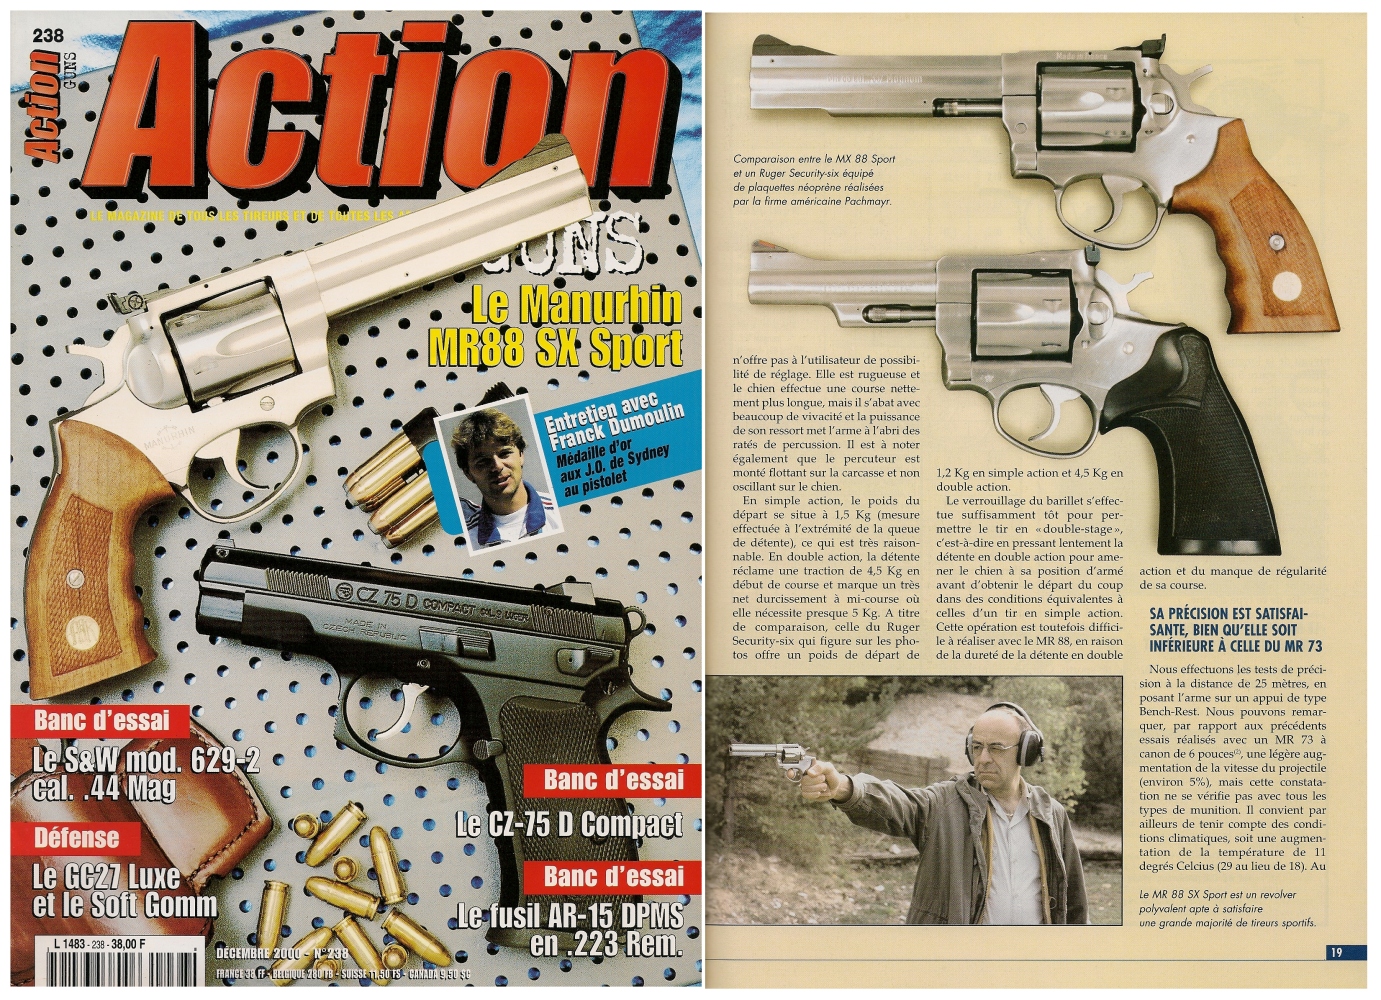 Le banc d’essai du revolver Manurhin MR-88 SX « Sport » a été publié sur 7 pages dans le magazine Action Guns n°238 (décembre 2000). 